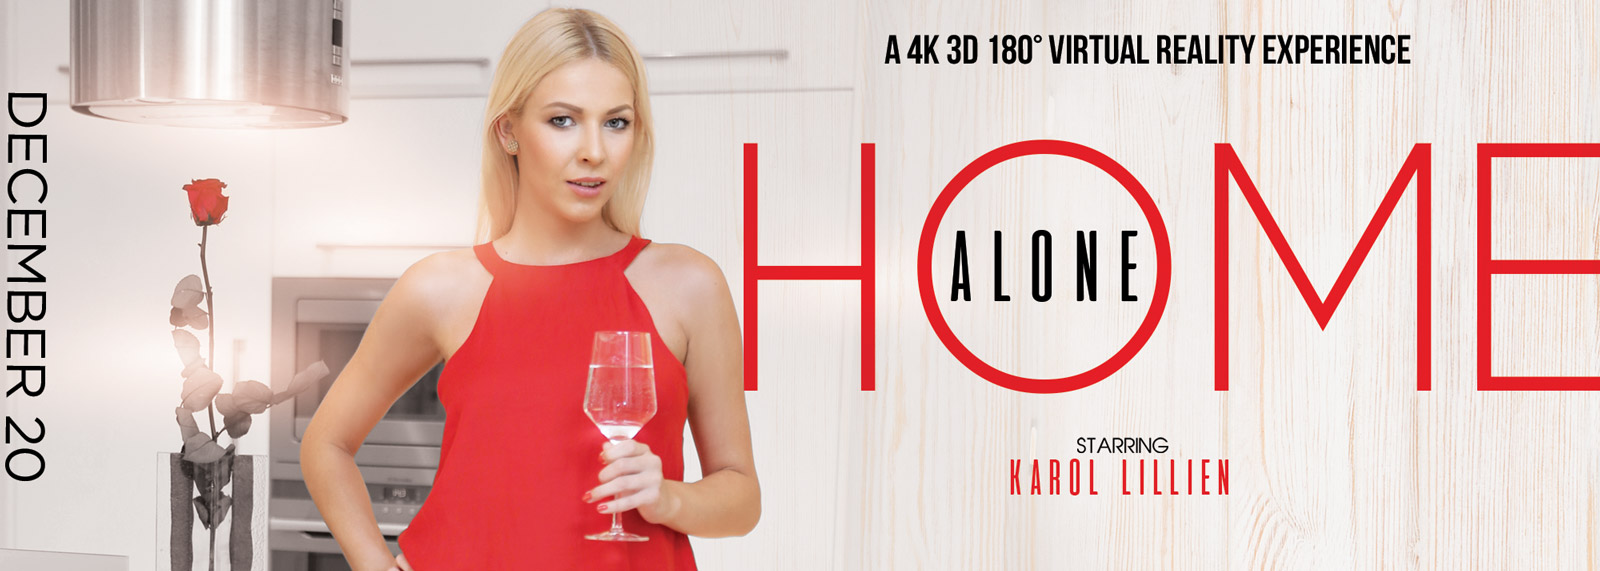 Home Alone - VR Porn Video, Starring: Karol Lilien